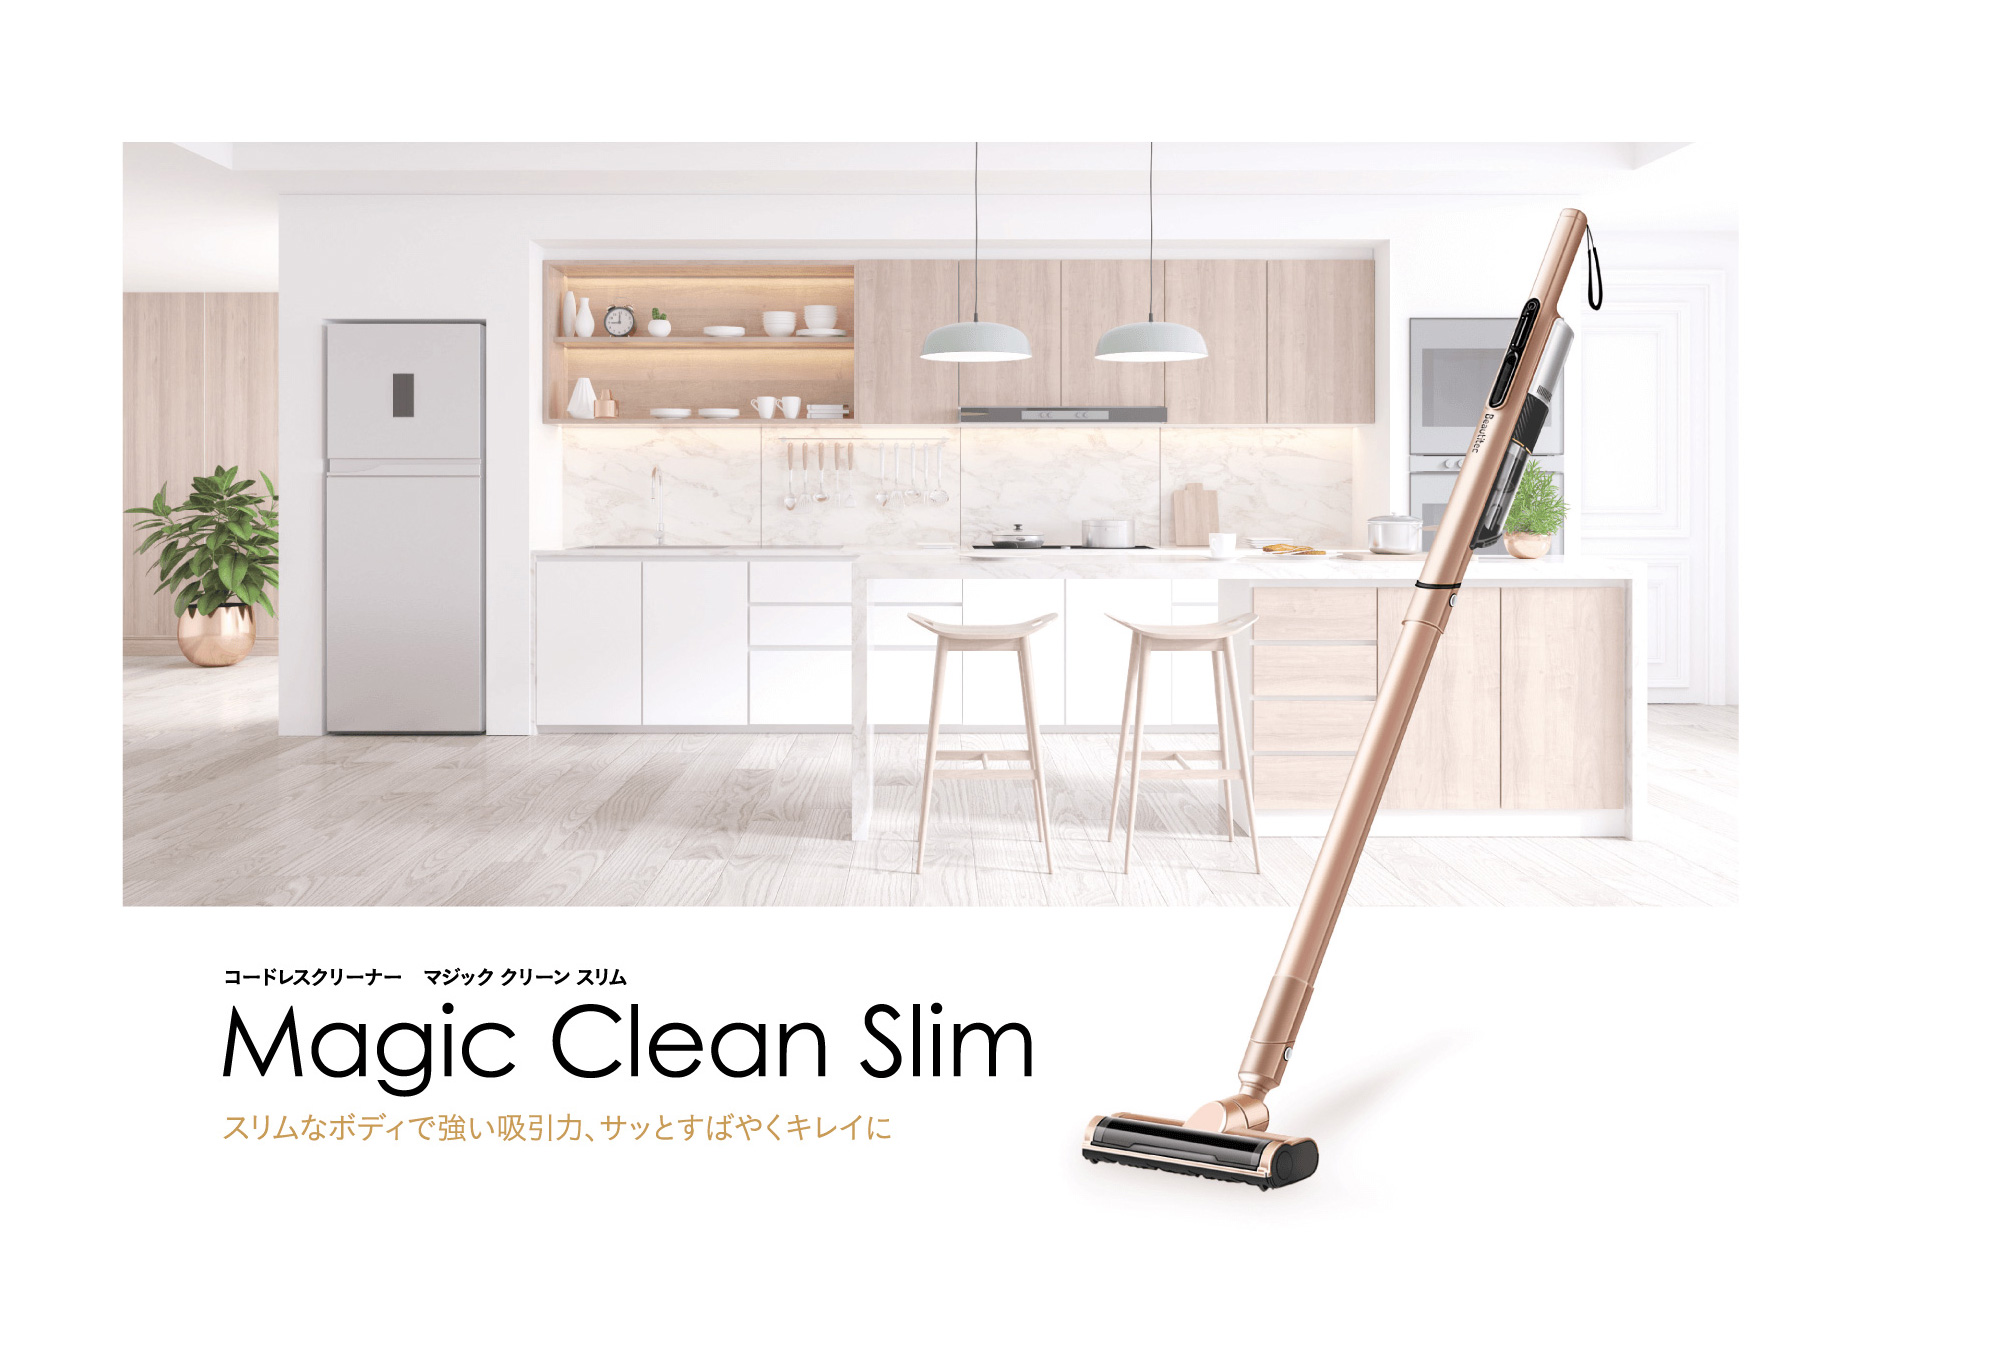 Magic Clean Slim – 株式会社Beautitec